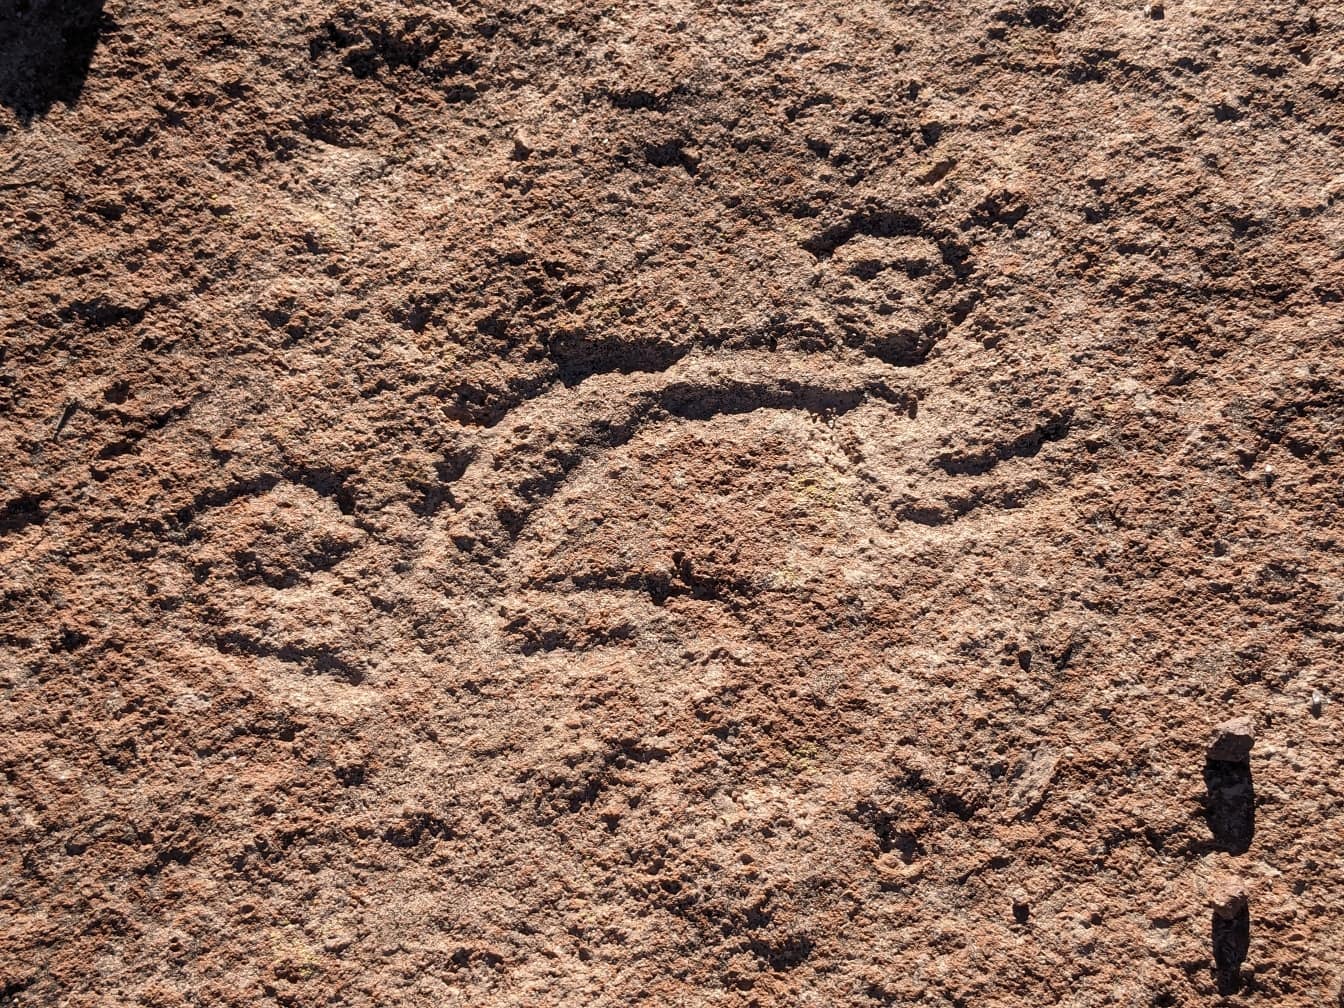 Naivne kamene rezbarije, petroglif u Južnoj Americi mogao bi biti iz razdoblja neolita